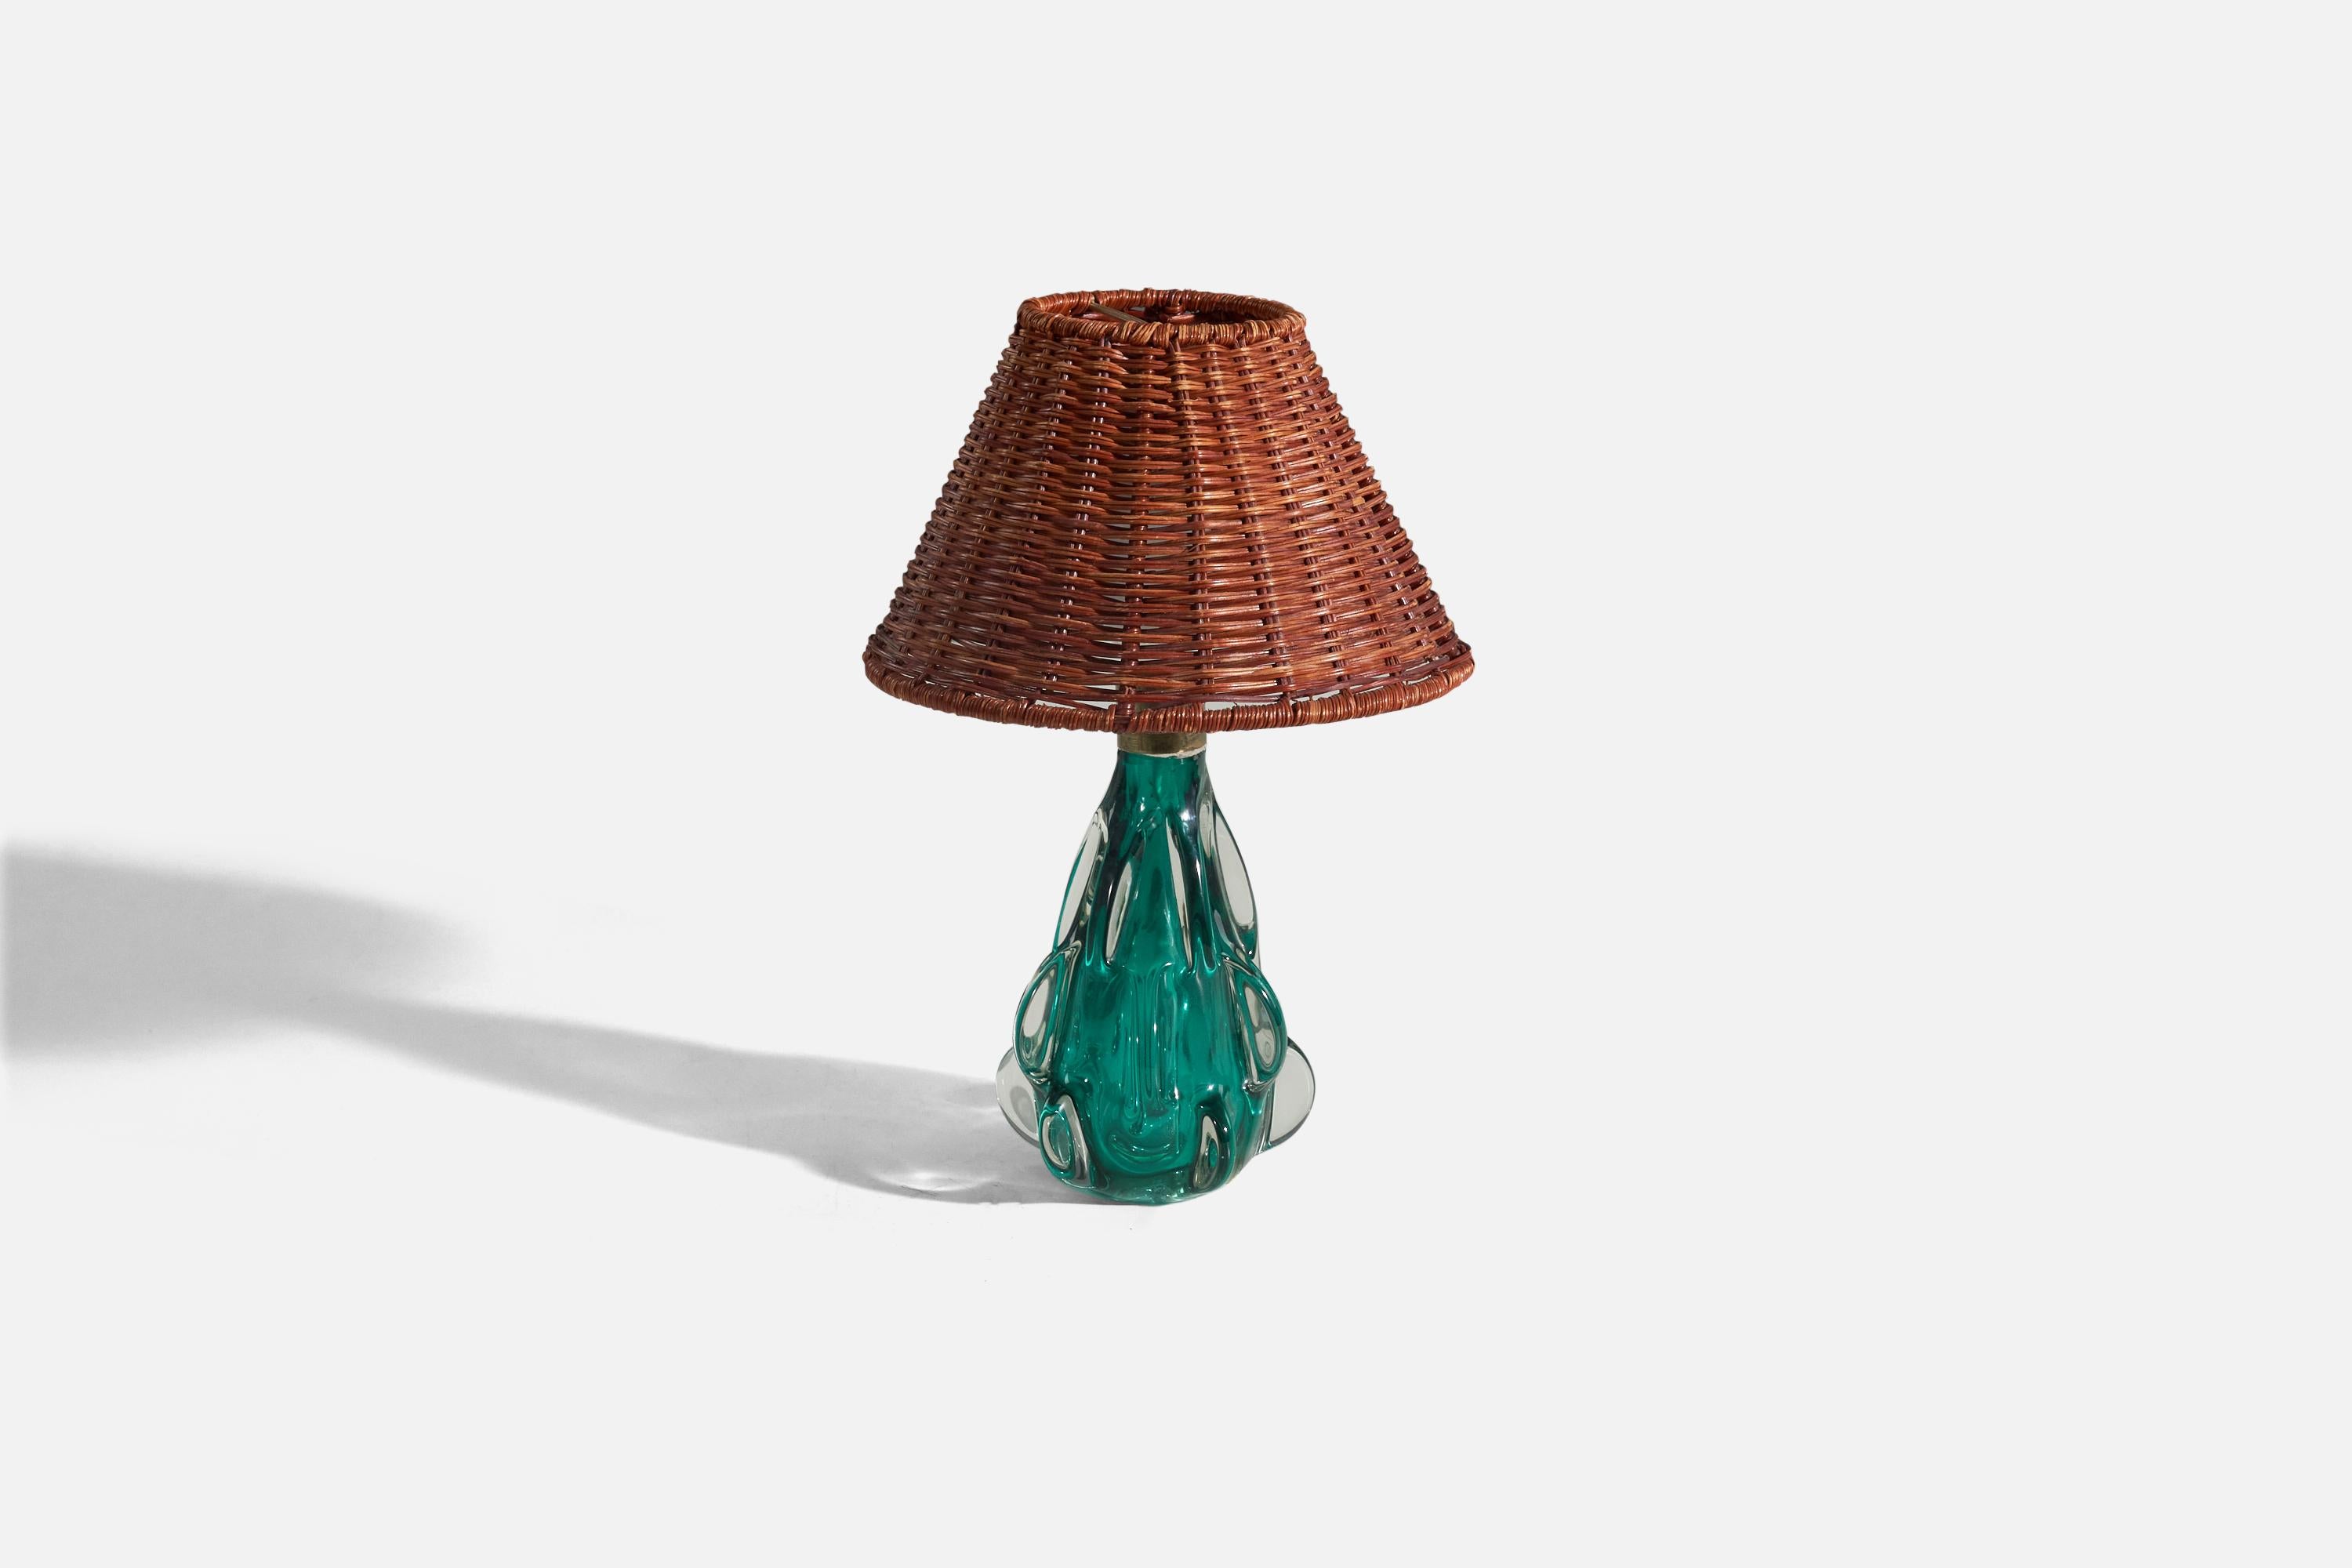 Lampe de table en verre bleu de Murano, conçue et produite à Murano, Italie, vers les années 1950. 

Vendu sans abat-jour. 
Dimensions de la lampe (pouces) : 9.56 x 4,65 x 4,56 (hauteur x largeur x profondeur)
Dimensions de l'abat-jour (pouces)